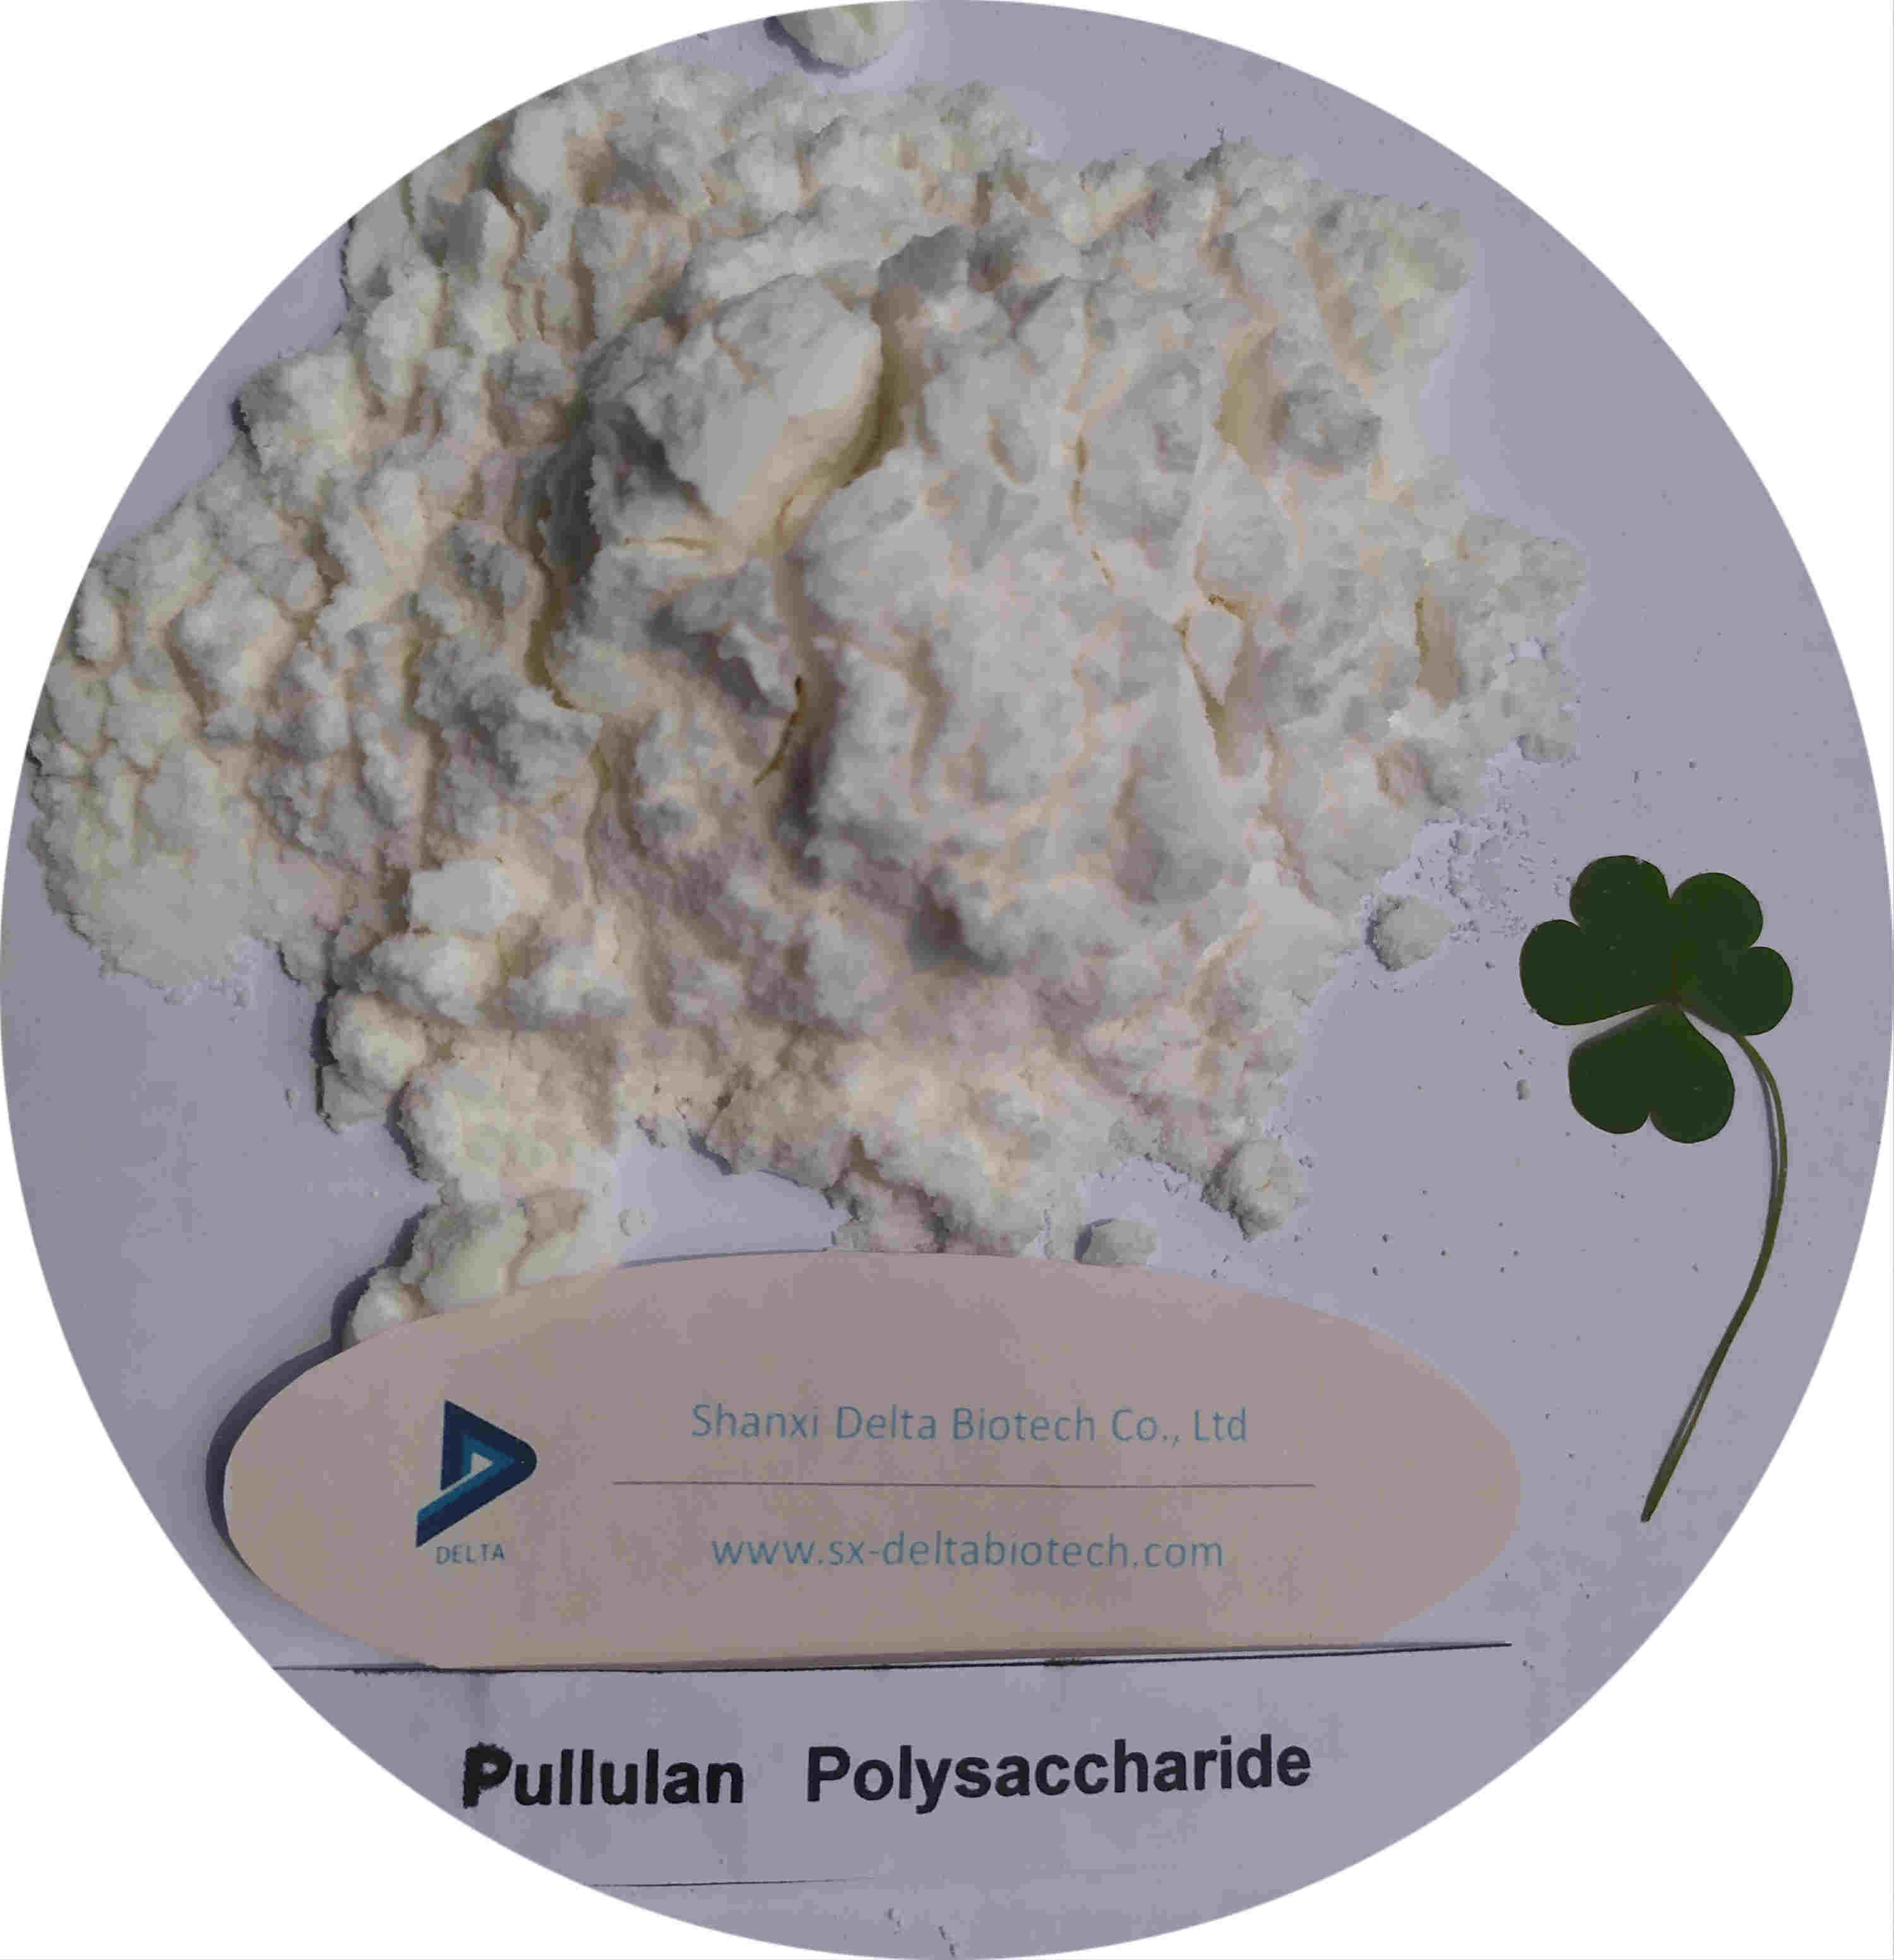 Pharmaceutical Grade Pullulan